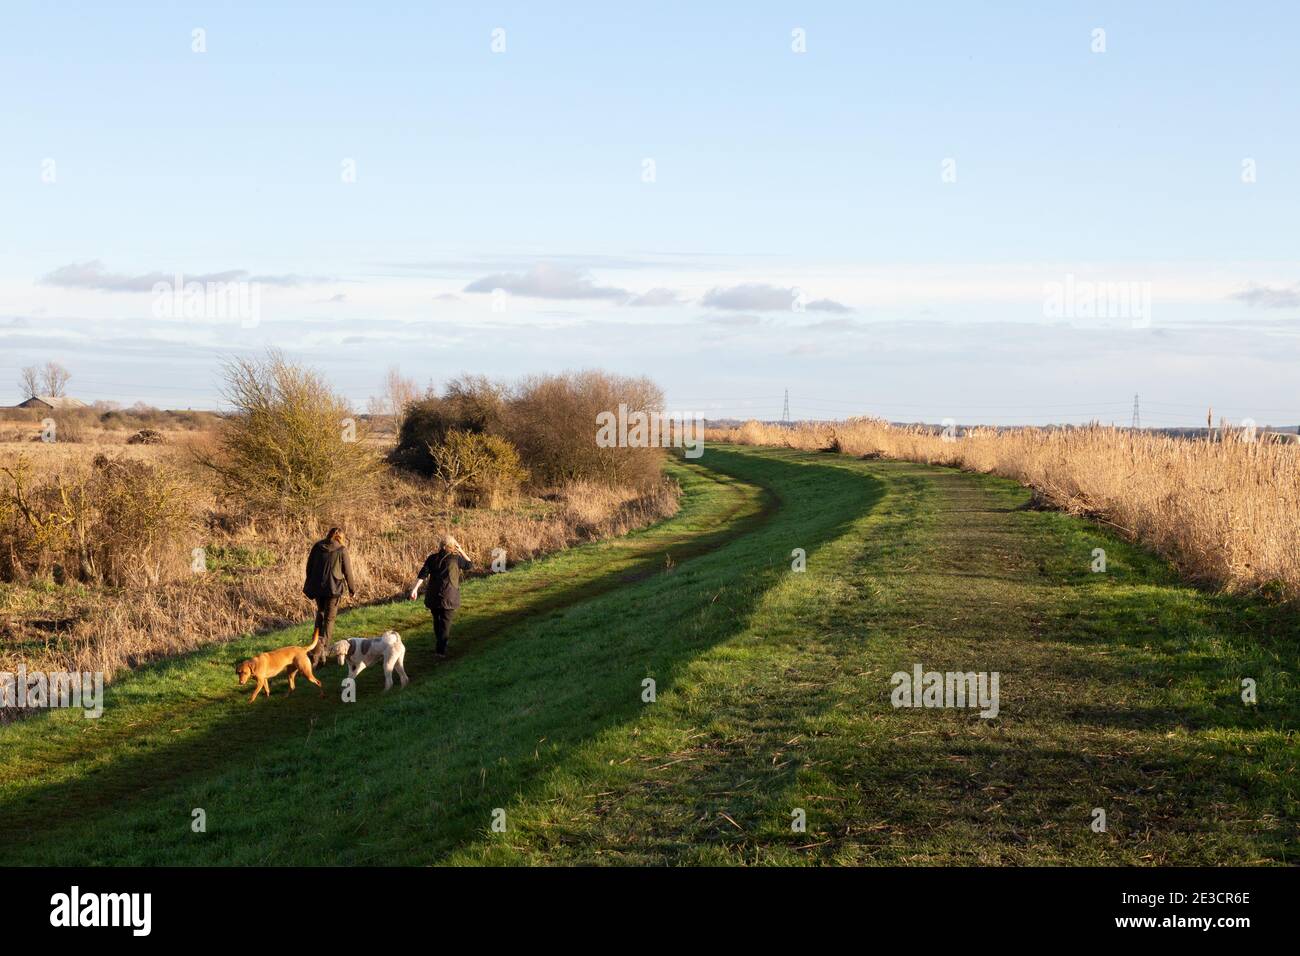 Menschen auf dem Land in Großbritannien. Wanderer mit ihren Hunden in Burwell Fen, Wandern im januar Sonnenschein im Winter, Burwell, Cambridgeshire East Anglia Großbritannien Stockfoto